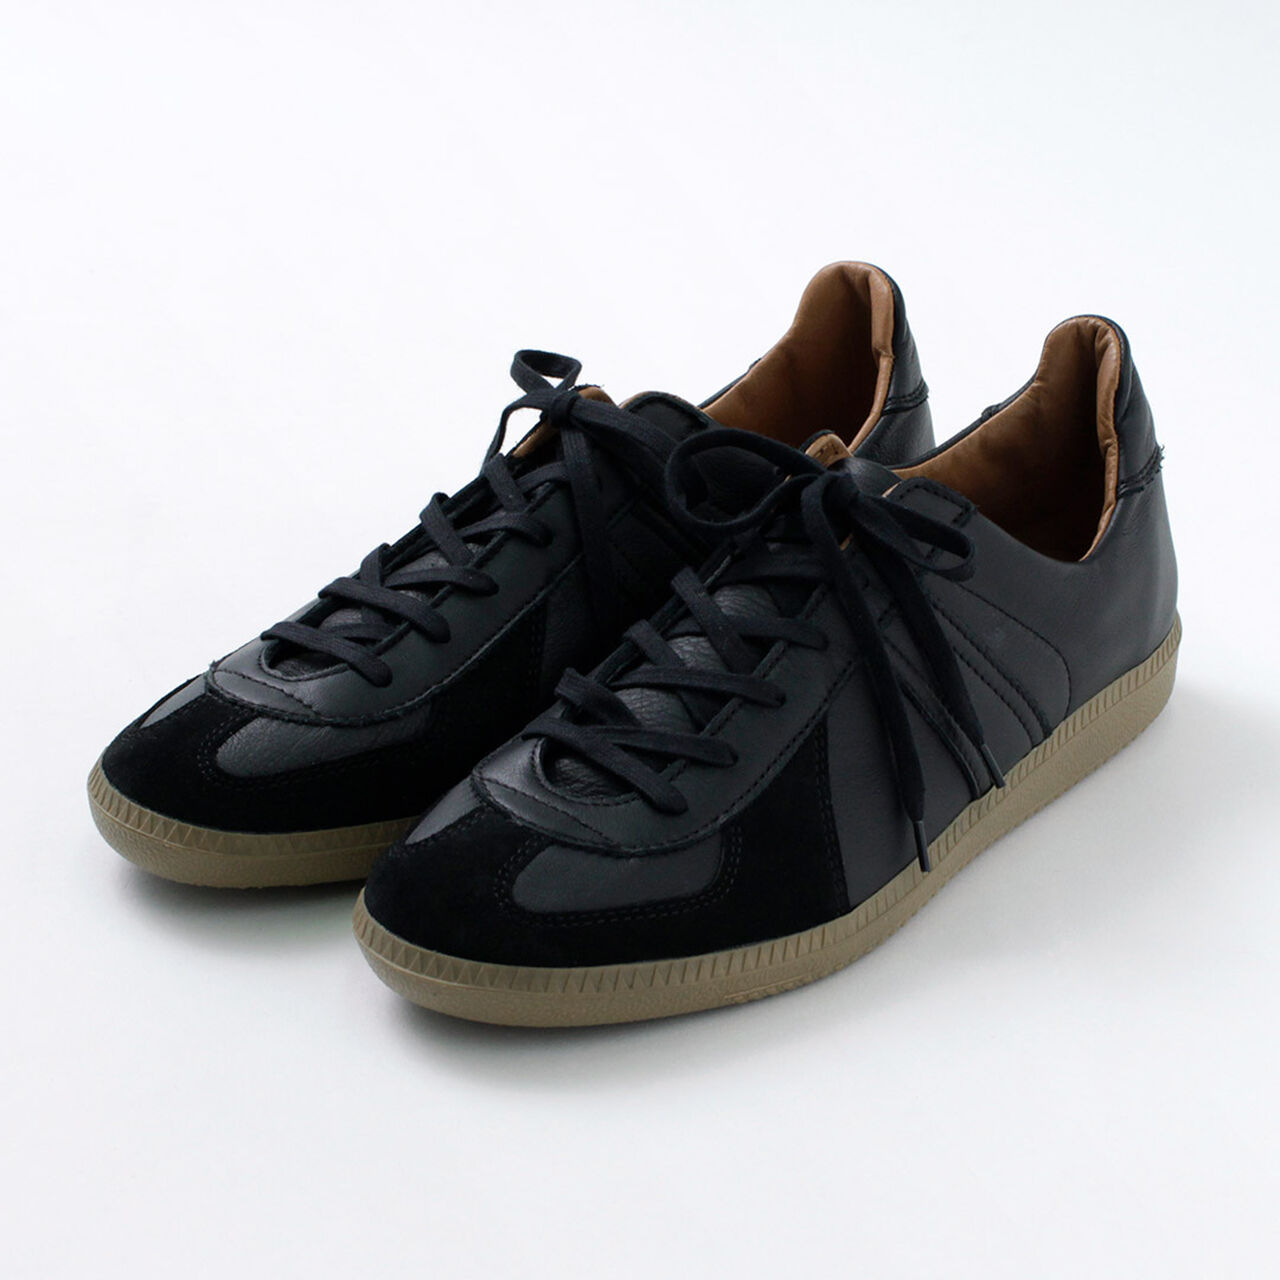 German Trainer Sneakers,Black, large image number 0